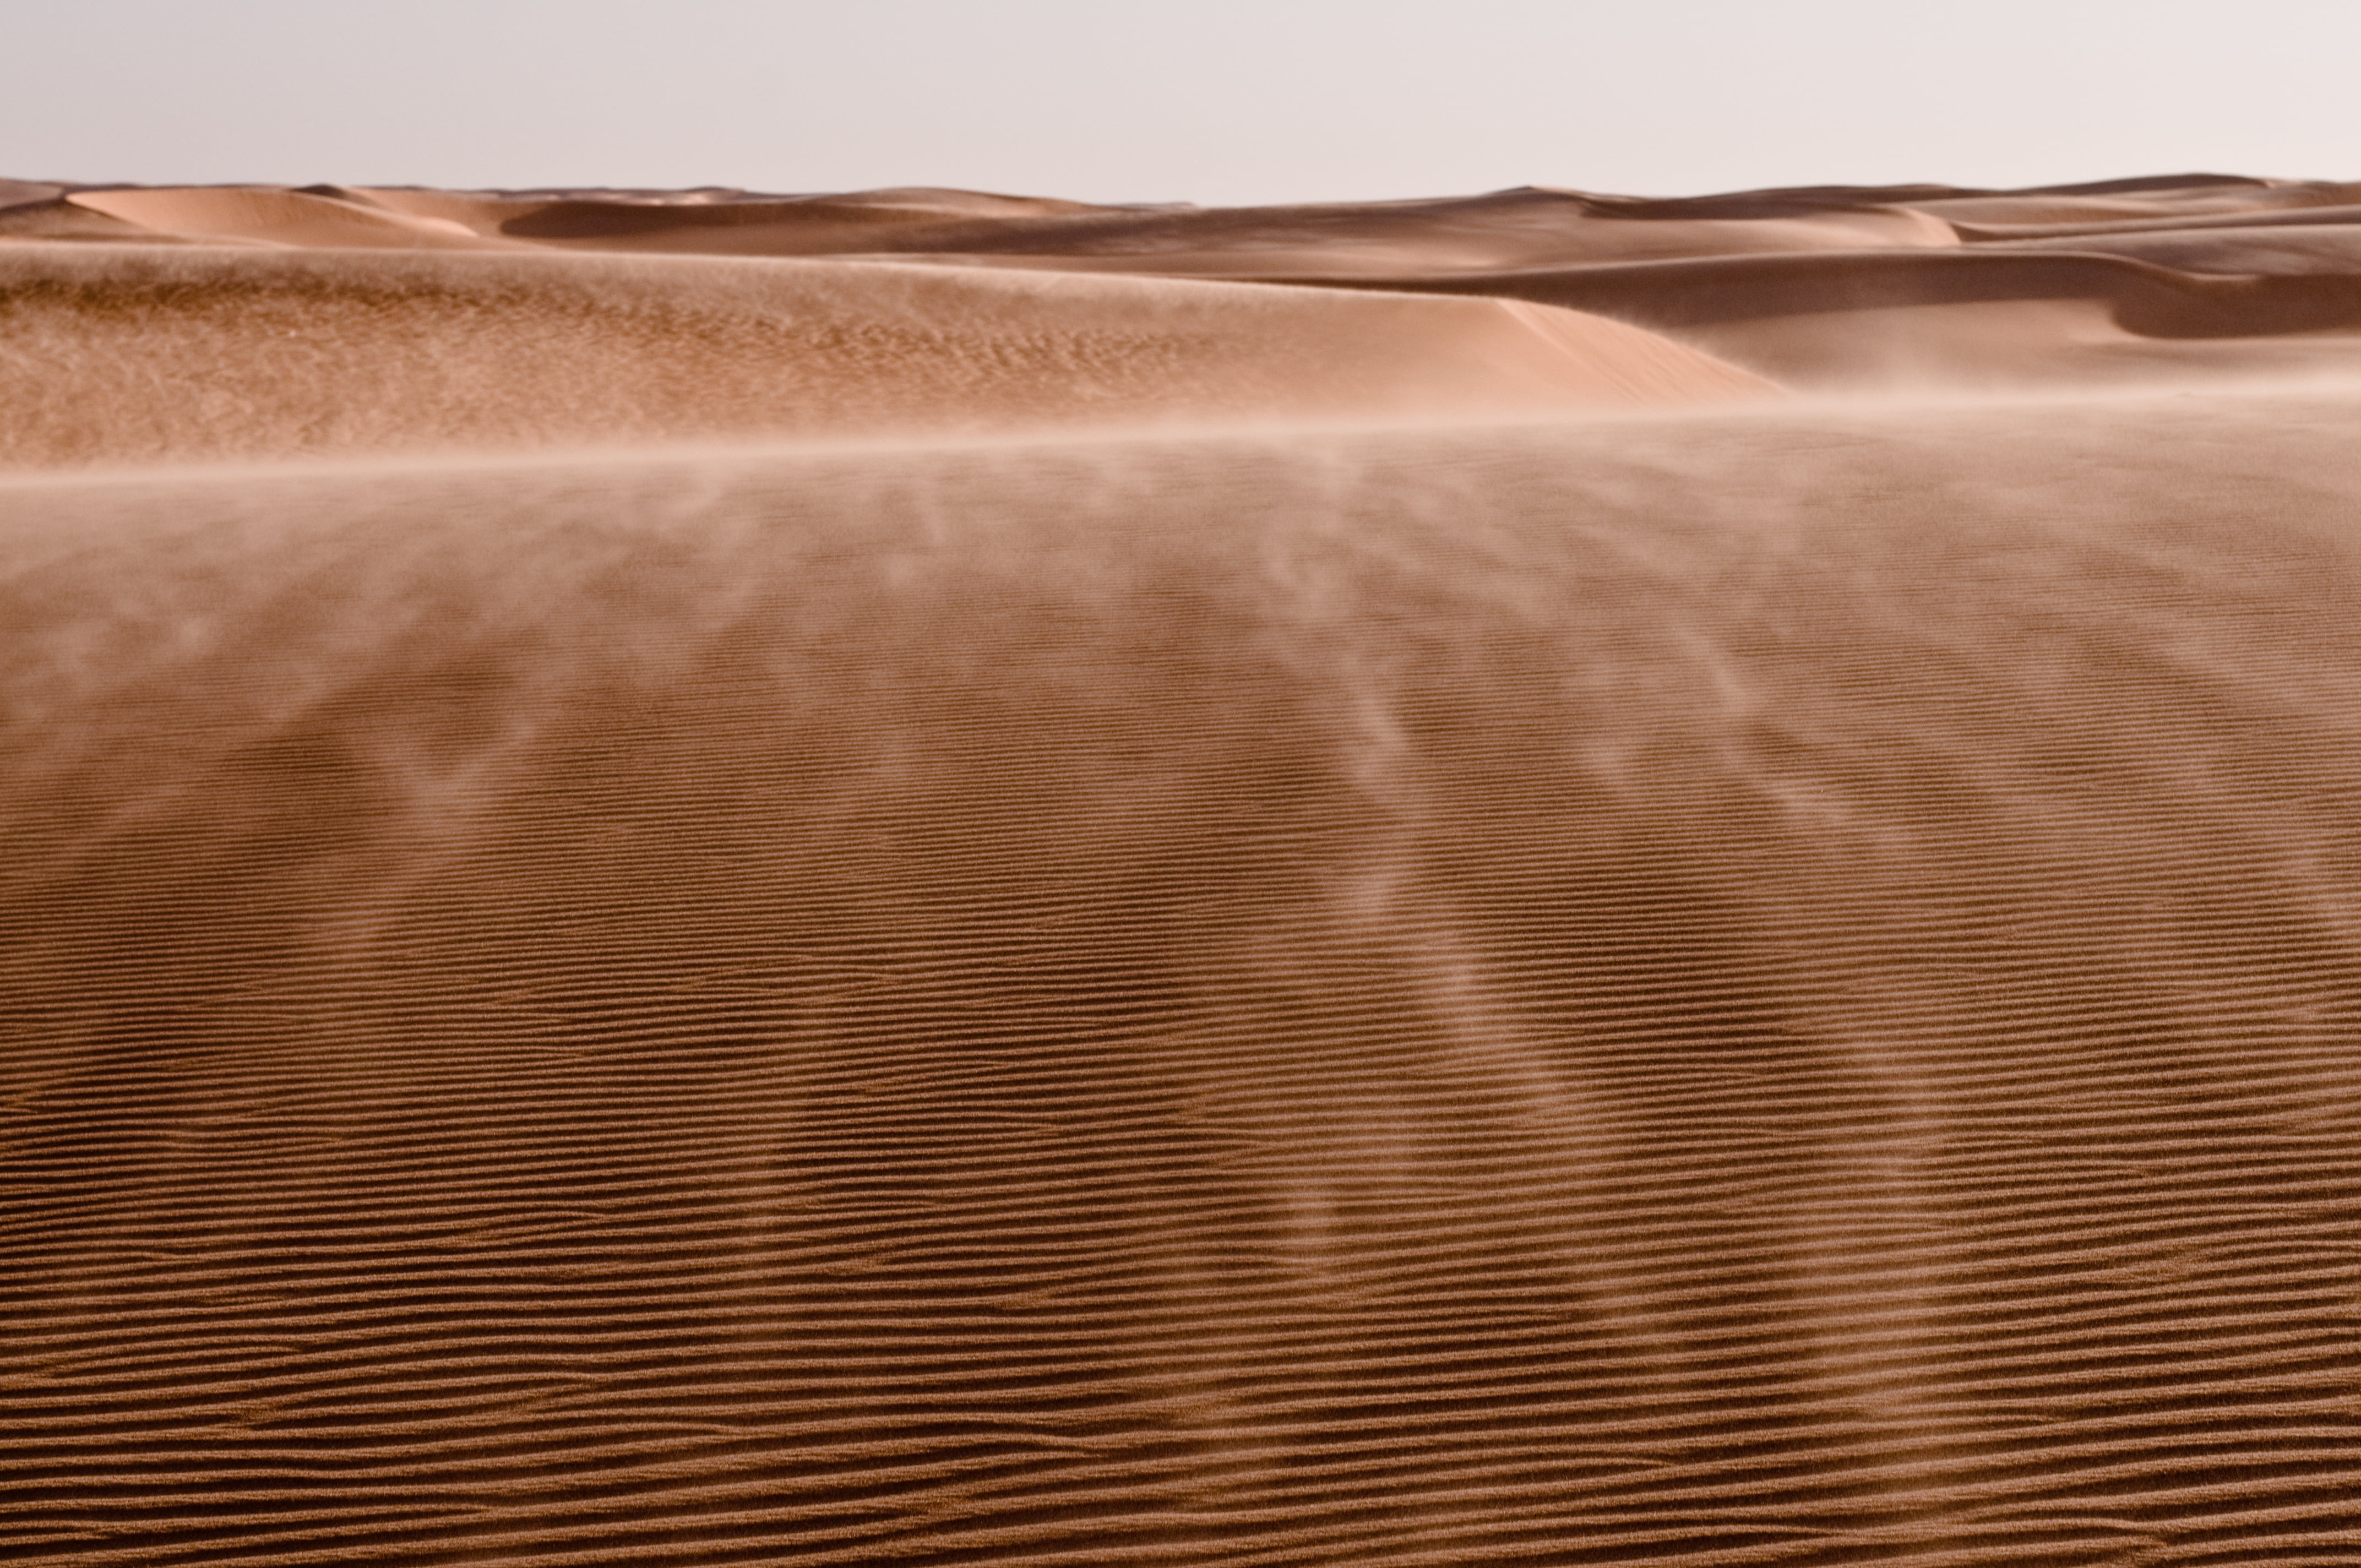 landscape photo of desert